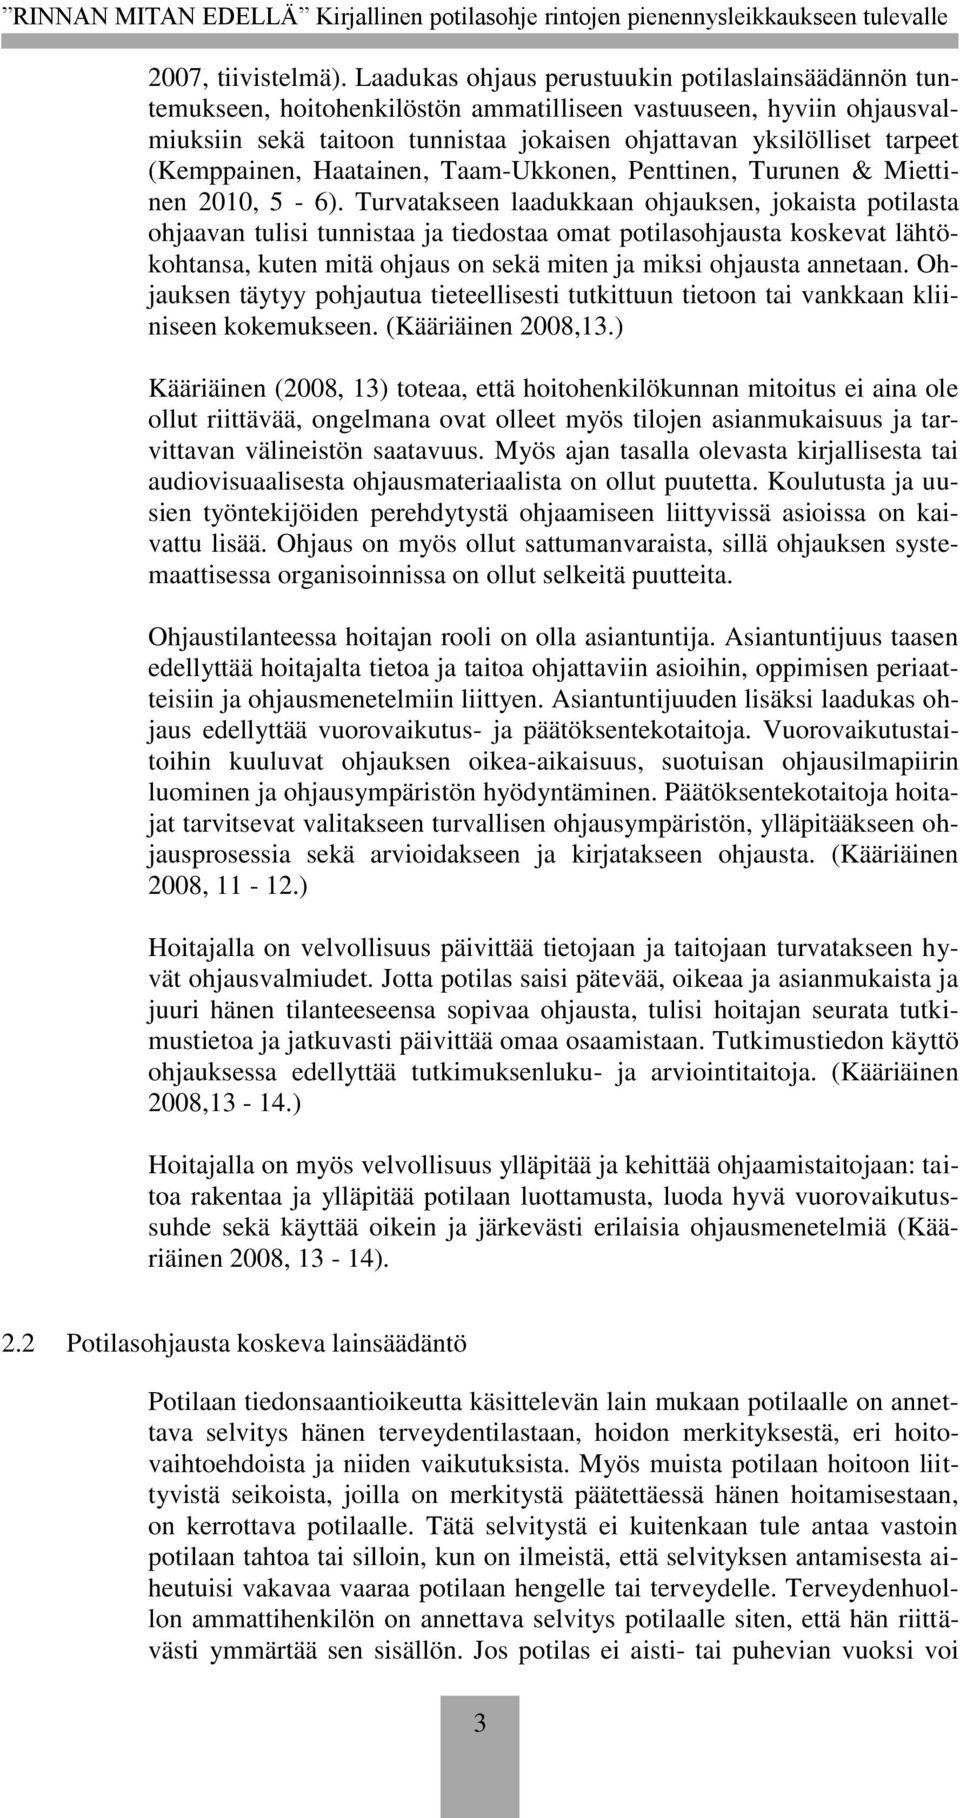 (Kemppainen, Haatainen, Taam-Ukkonen, Penttinen, Turunen & Miettinen 2010, 5-6).